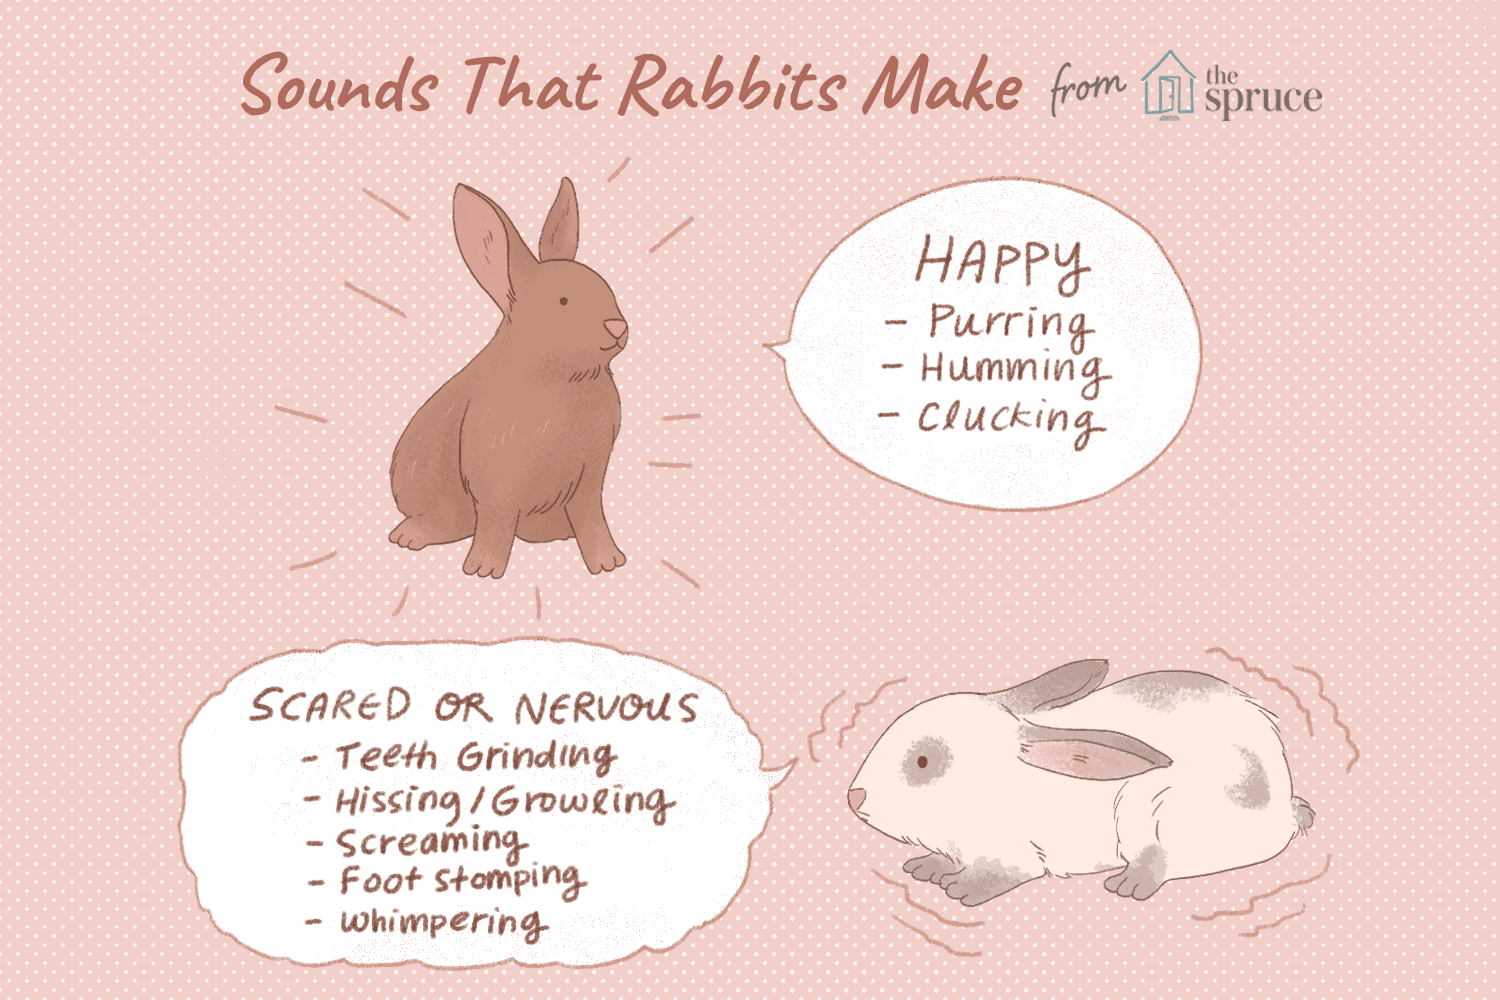 Do rabbits make noises?